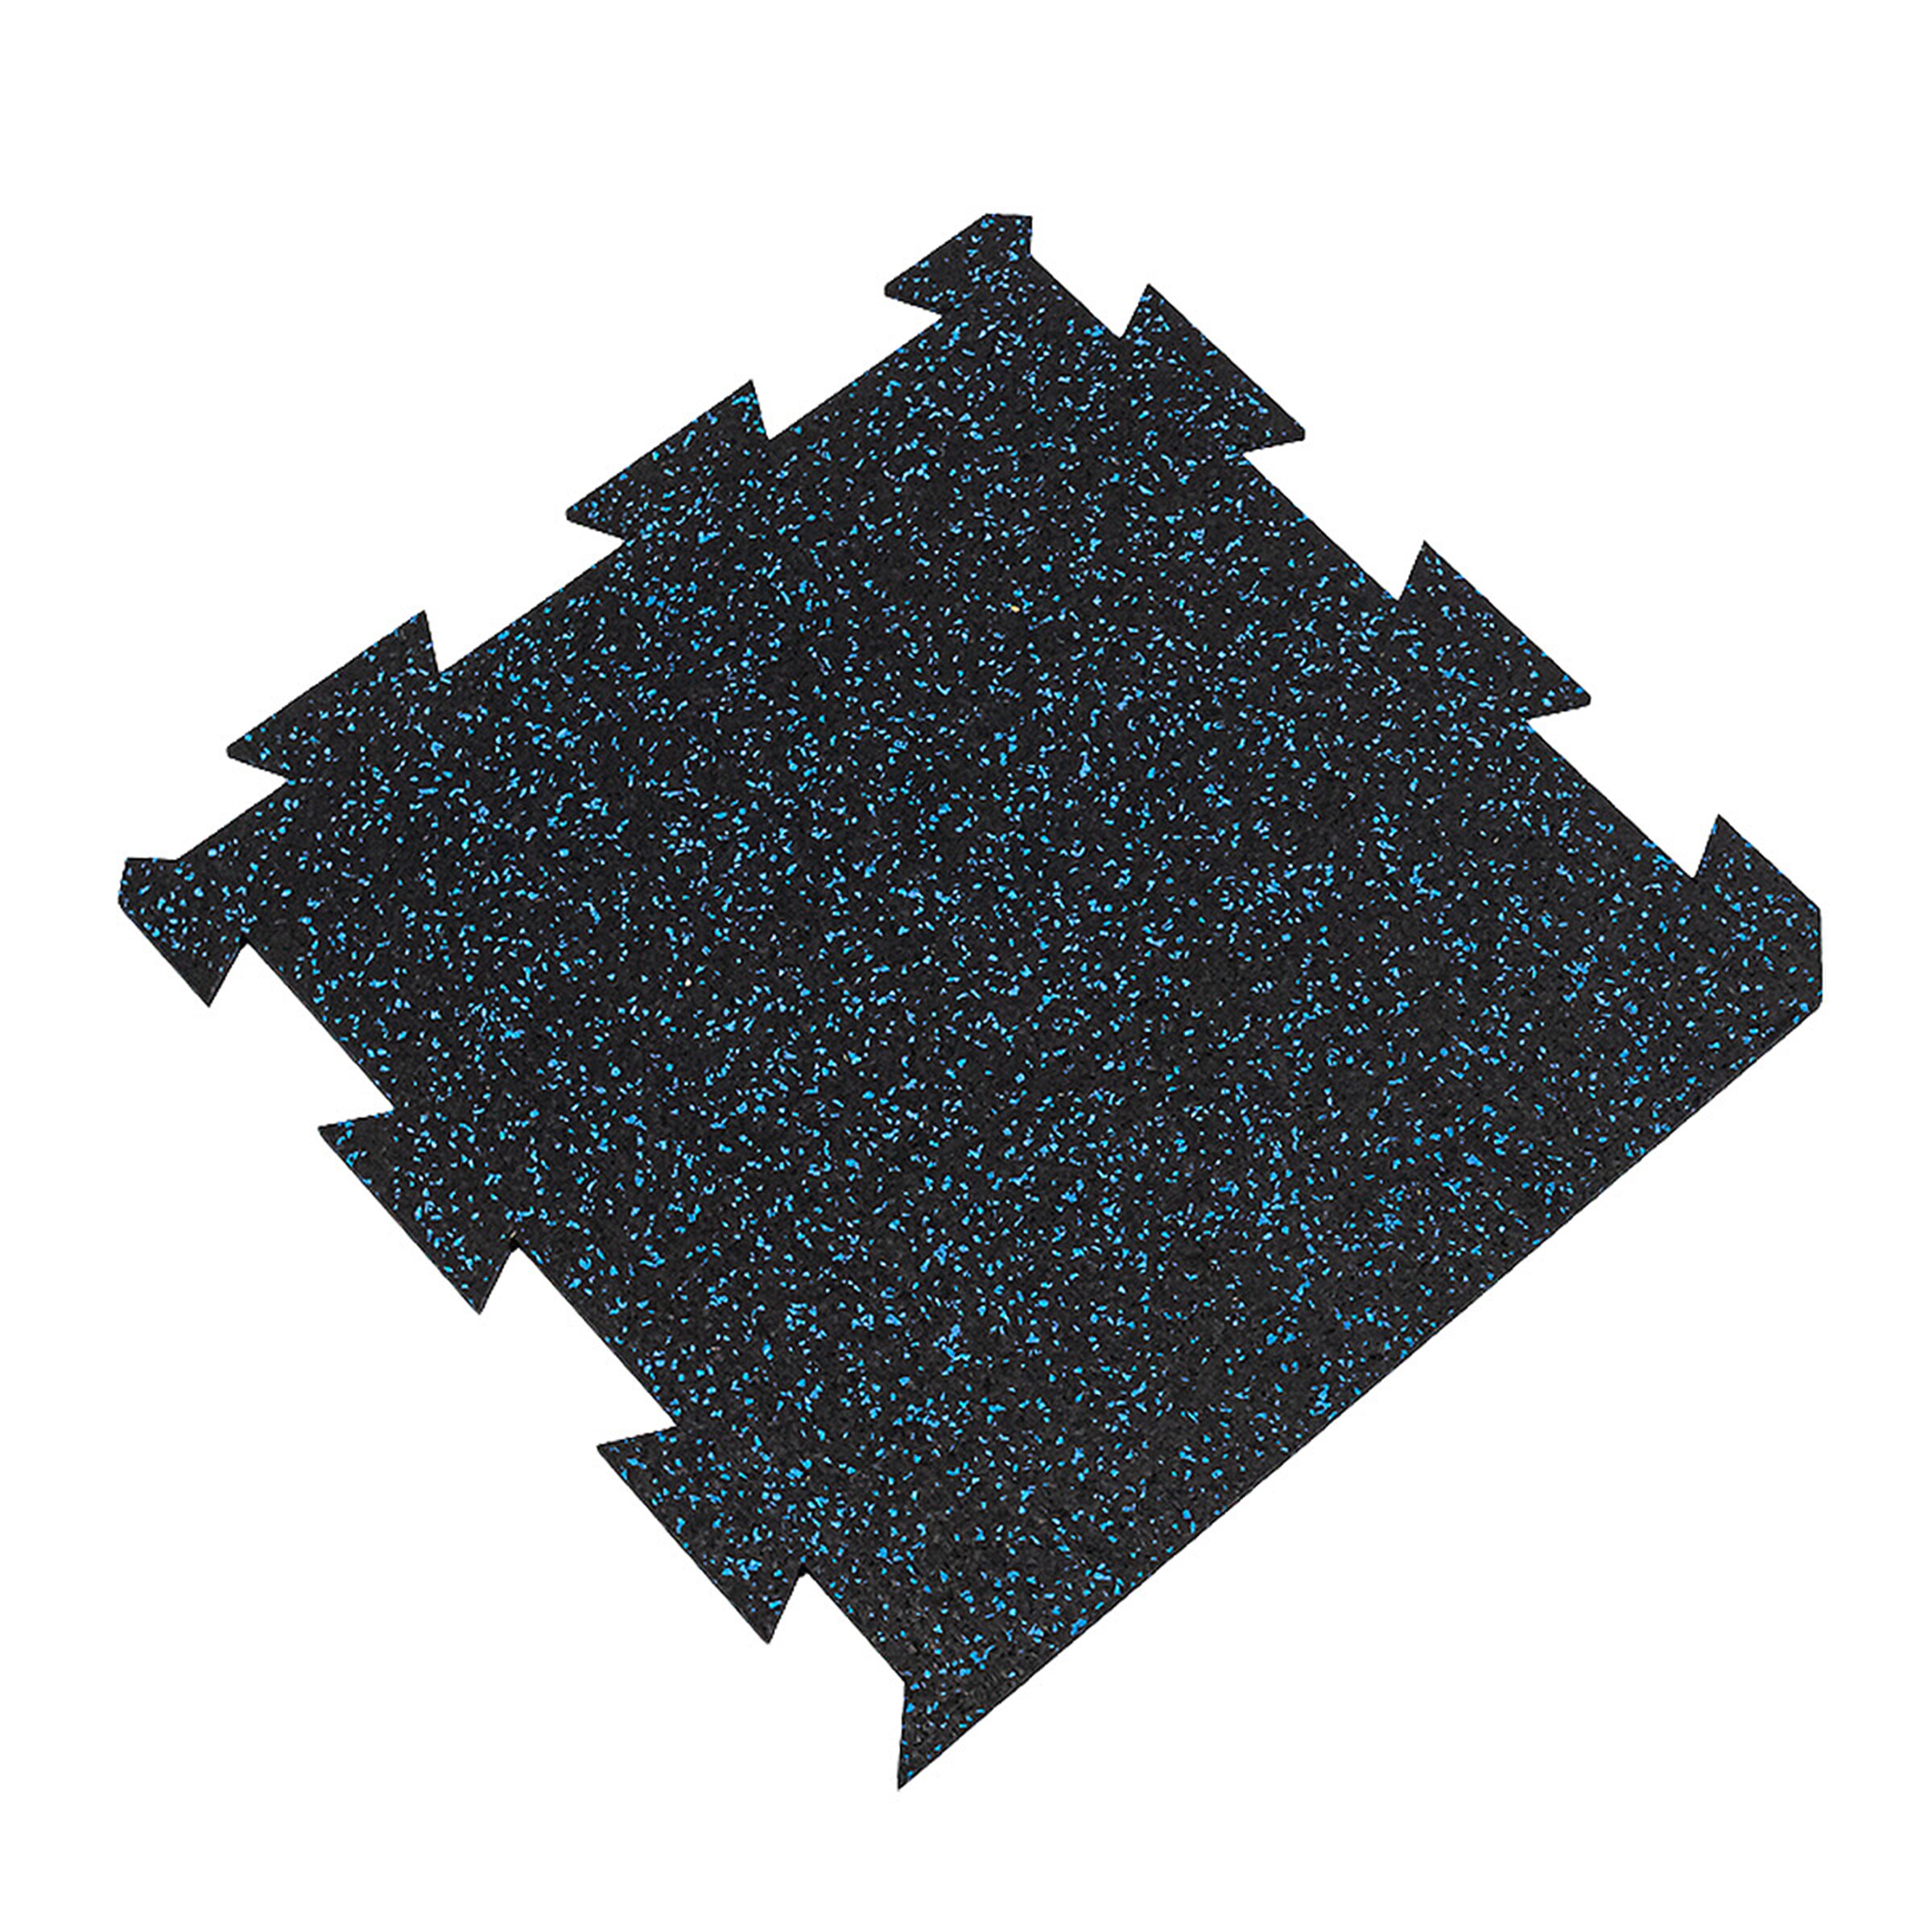 Černo-modrá gumová puzzle modulová dlažba FLOMA SF1050 FitFlo - délka 50 cm, šířka 50 cm, výška 0,8 cm